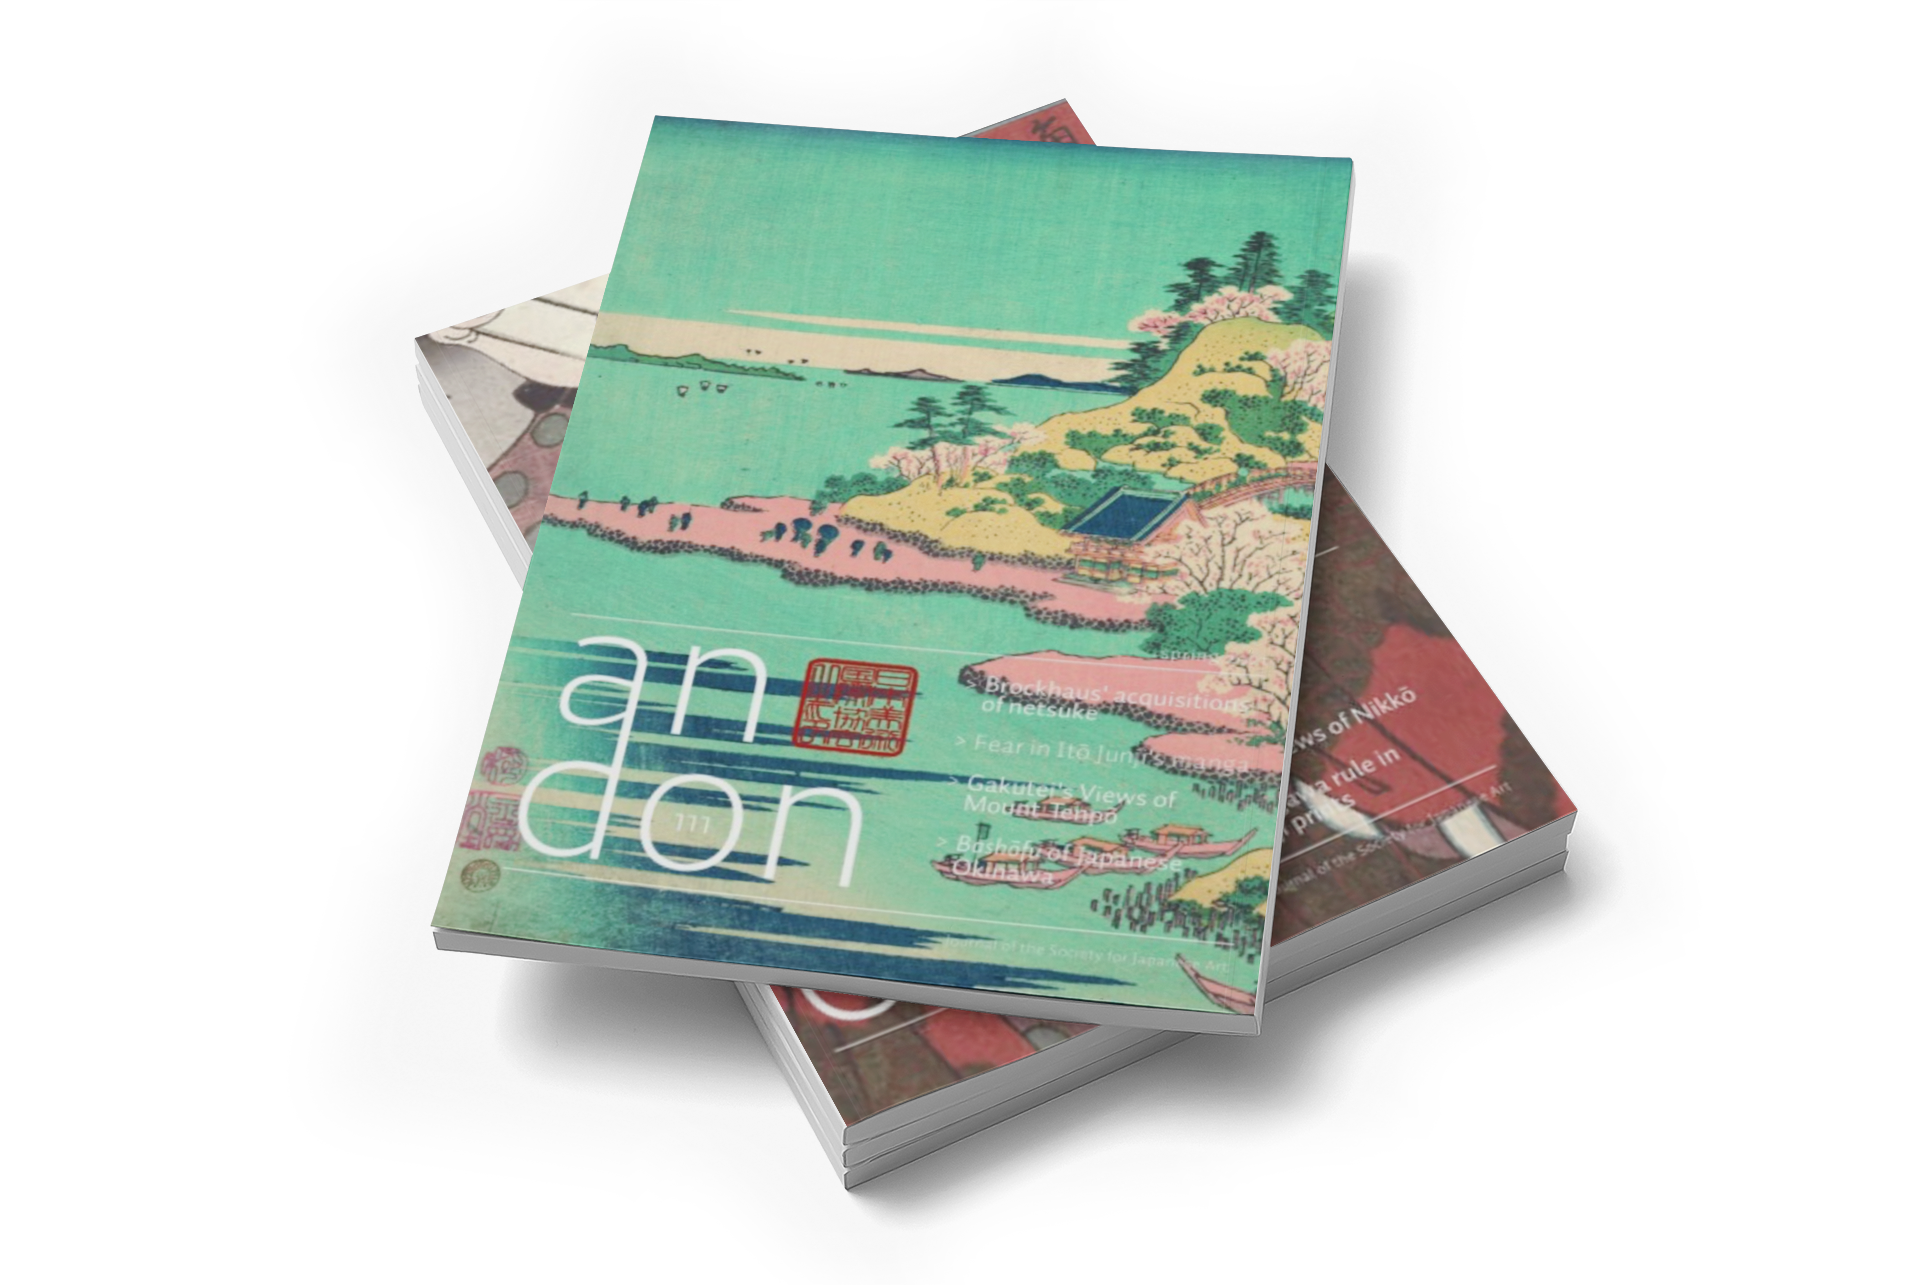 Andon magazine promotion image